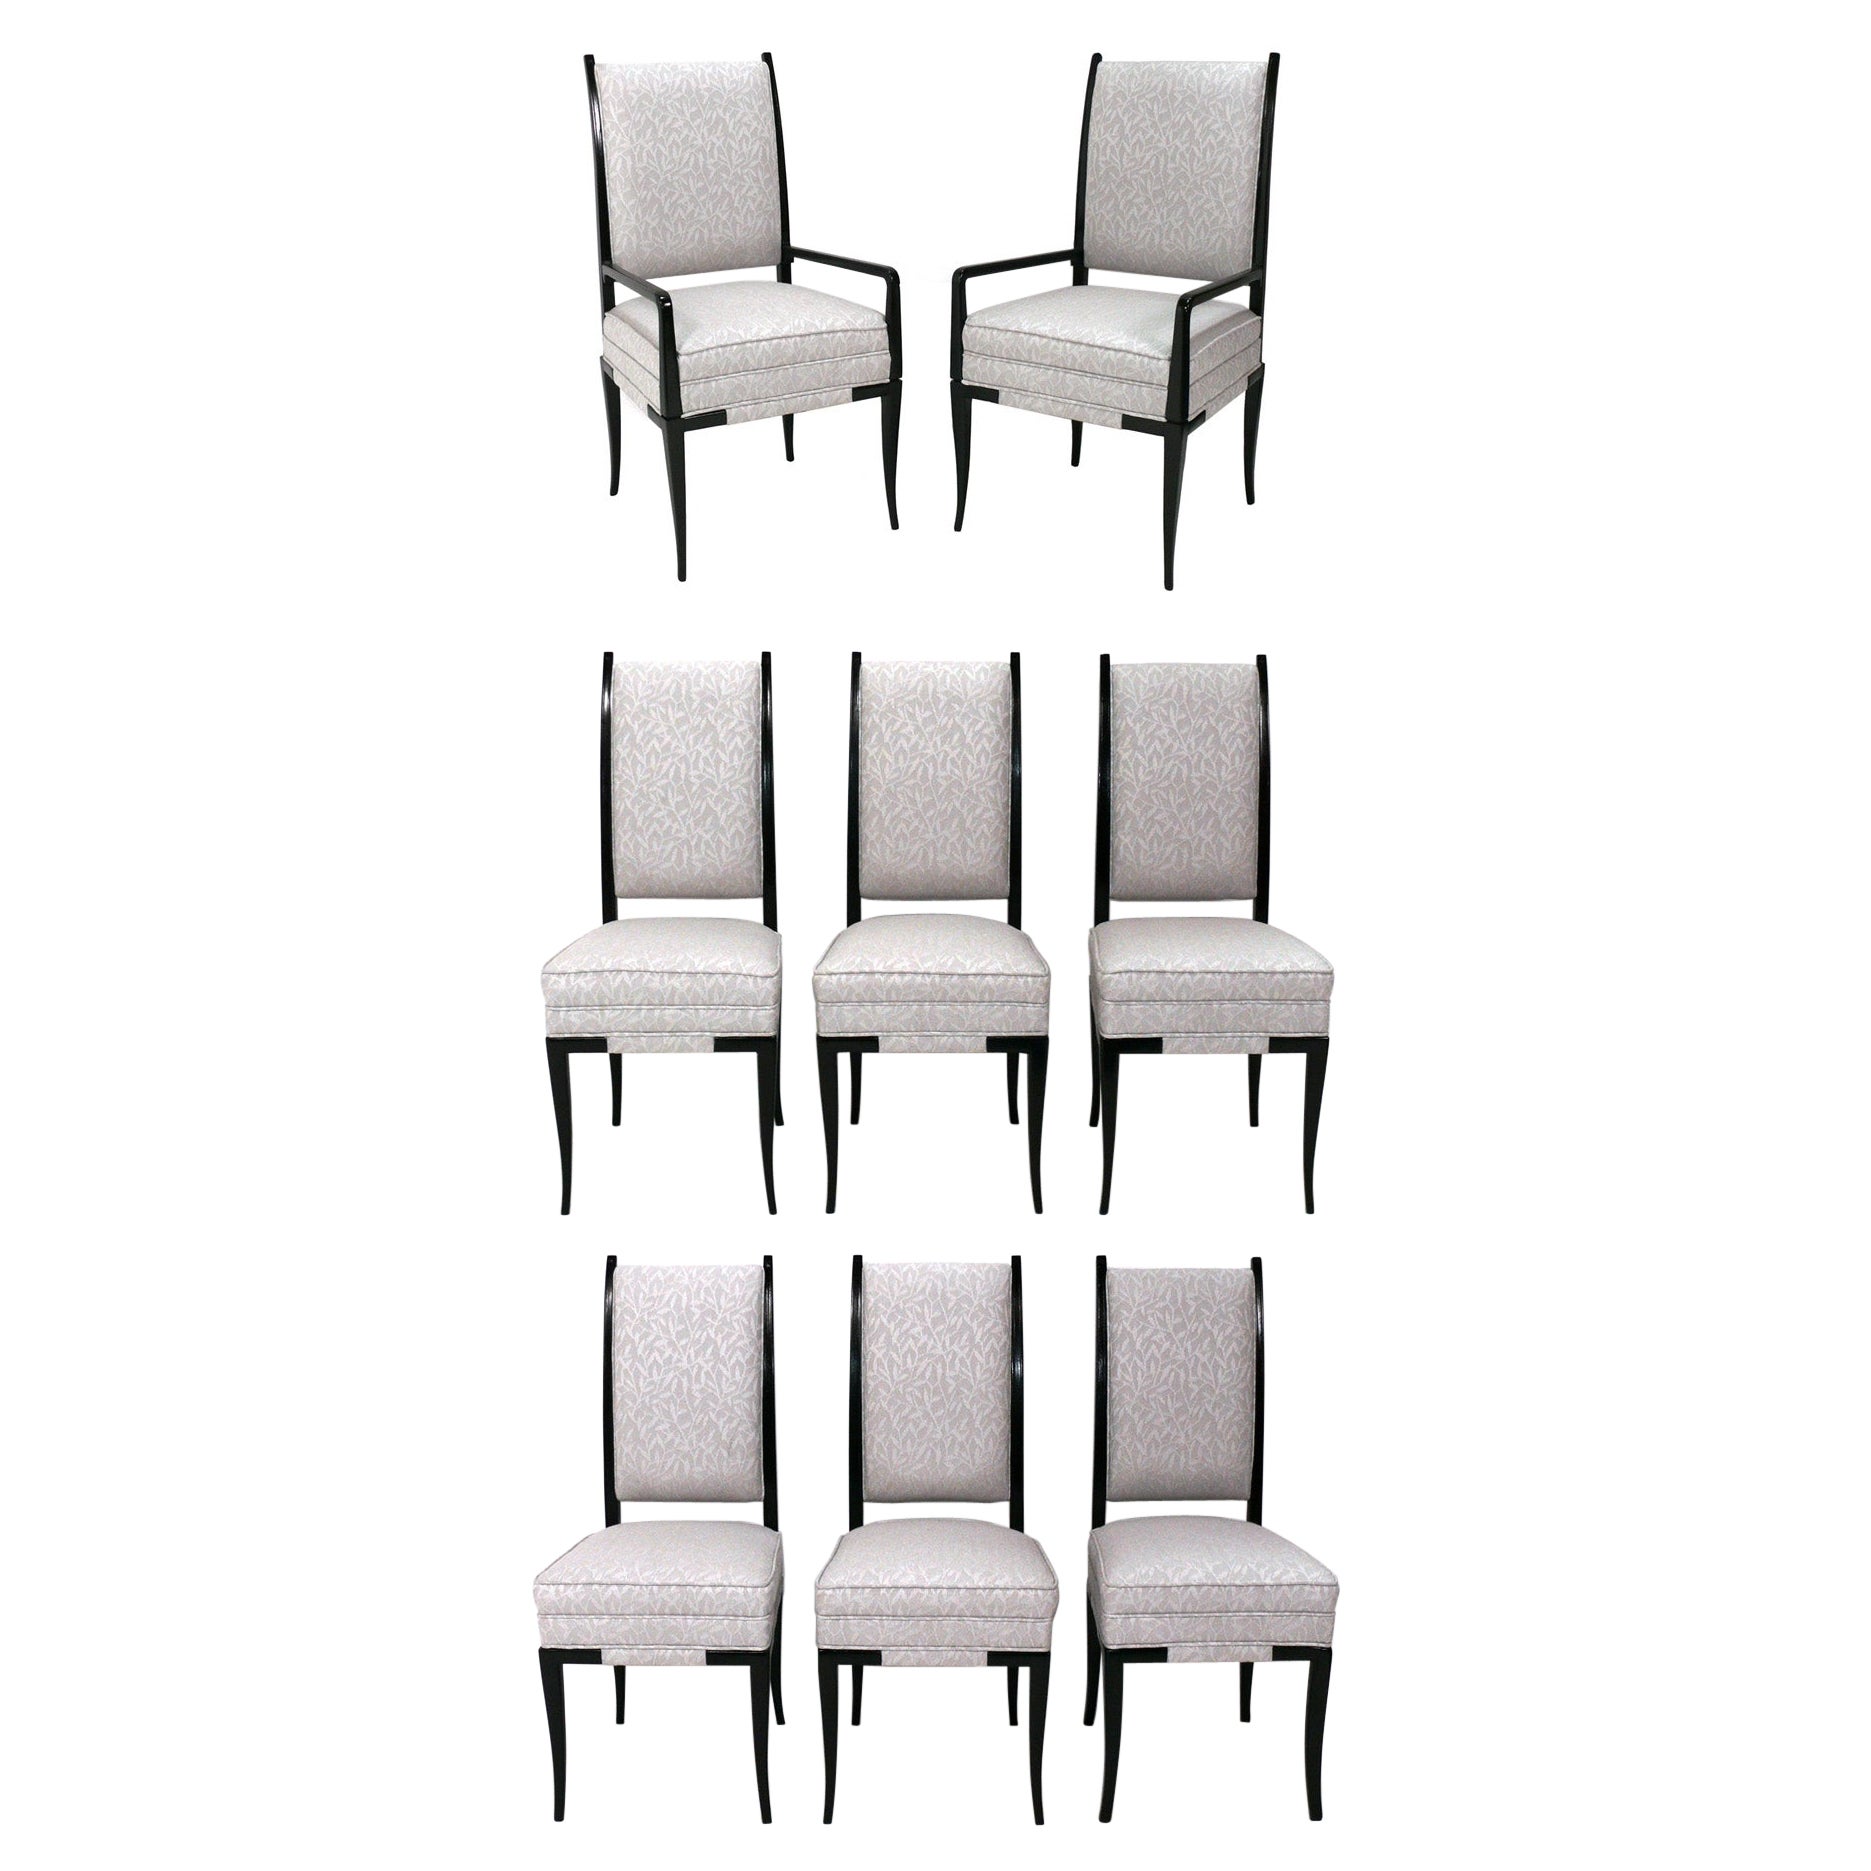 Chaises de salle à manger Tommi Parzinger 2 fauteuils 6 chaises d'appoint